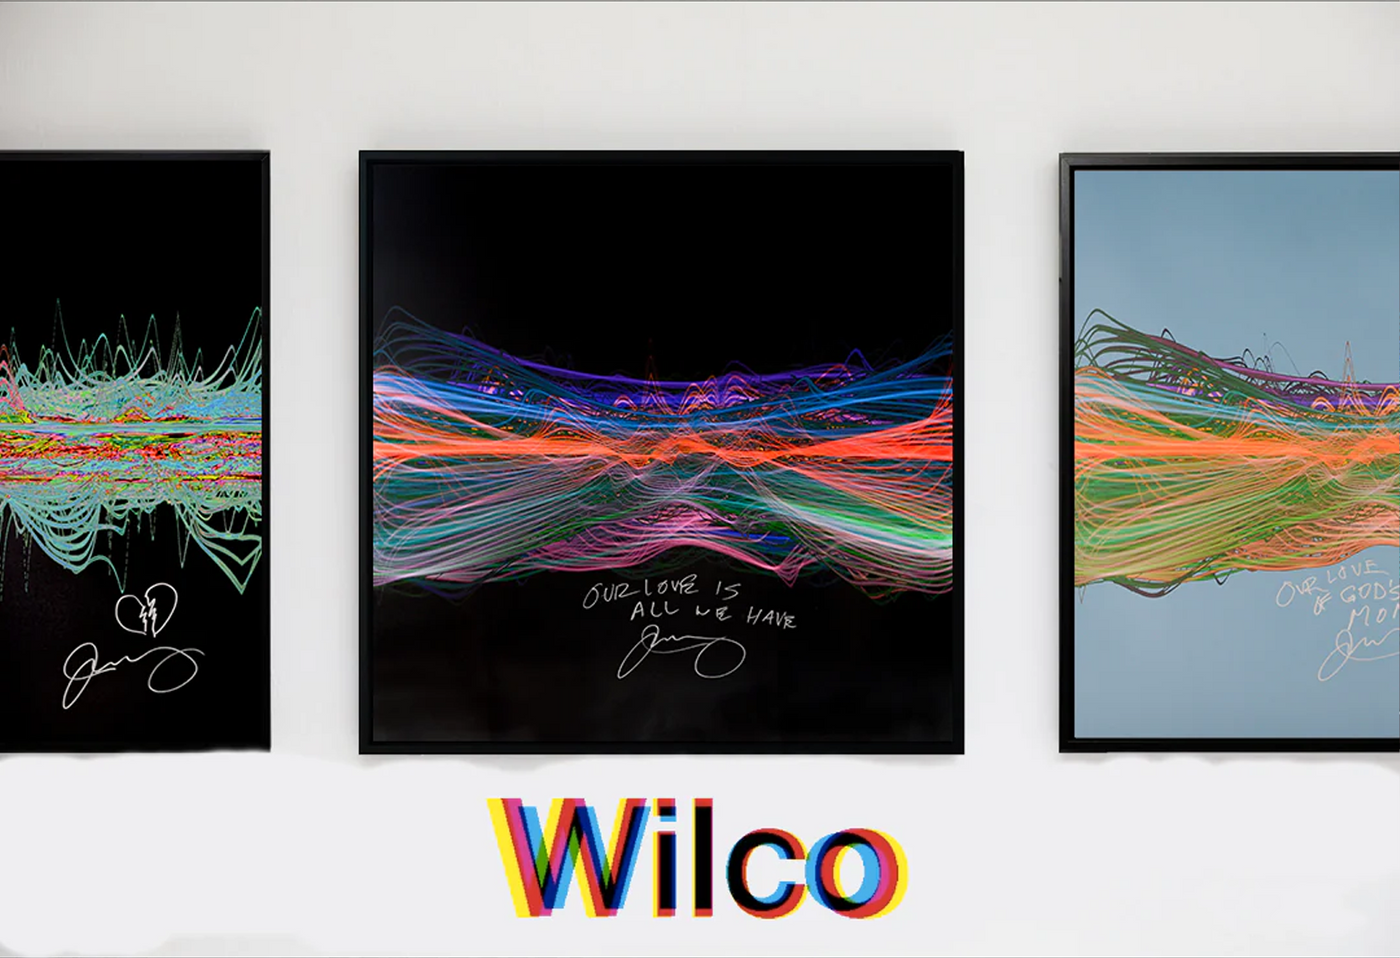 Wilco